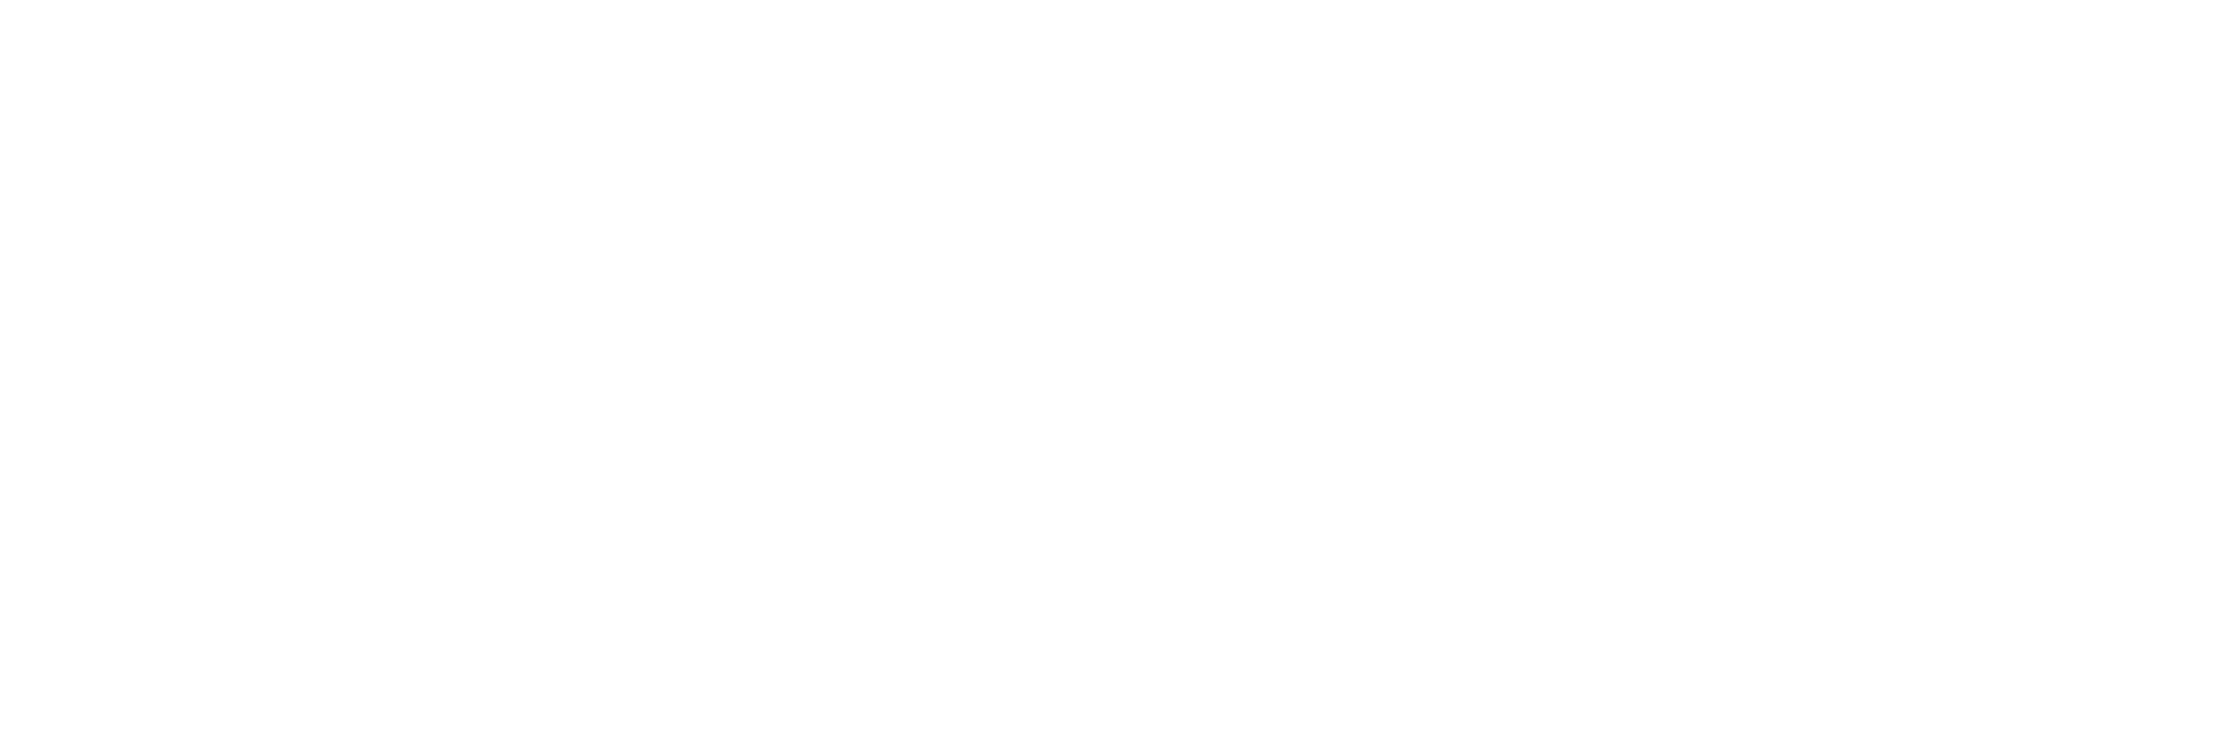 V2X logo for dark backgrounds (transparent PNG)